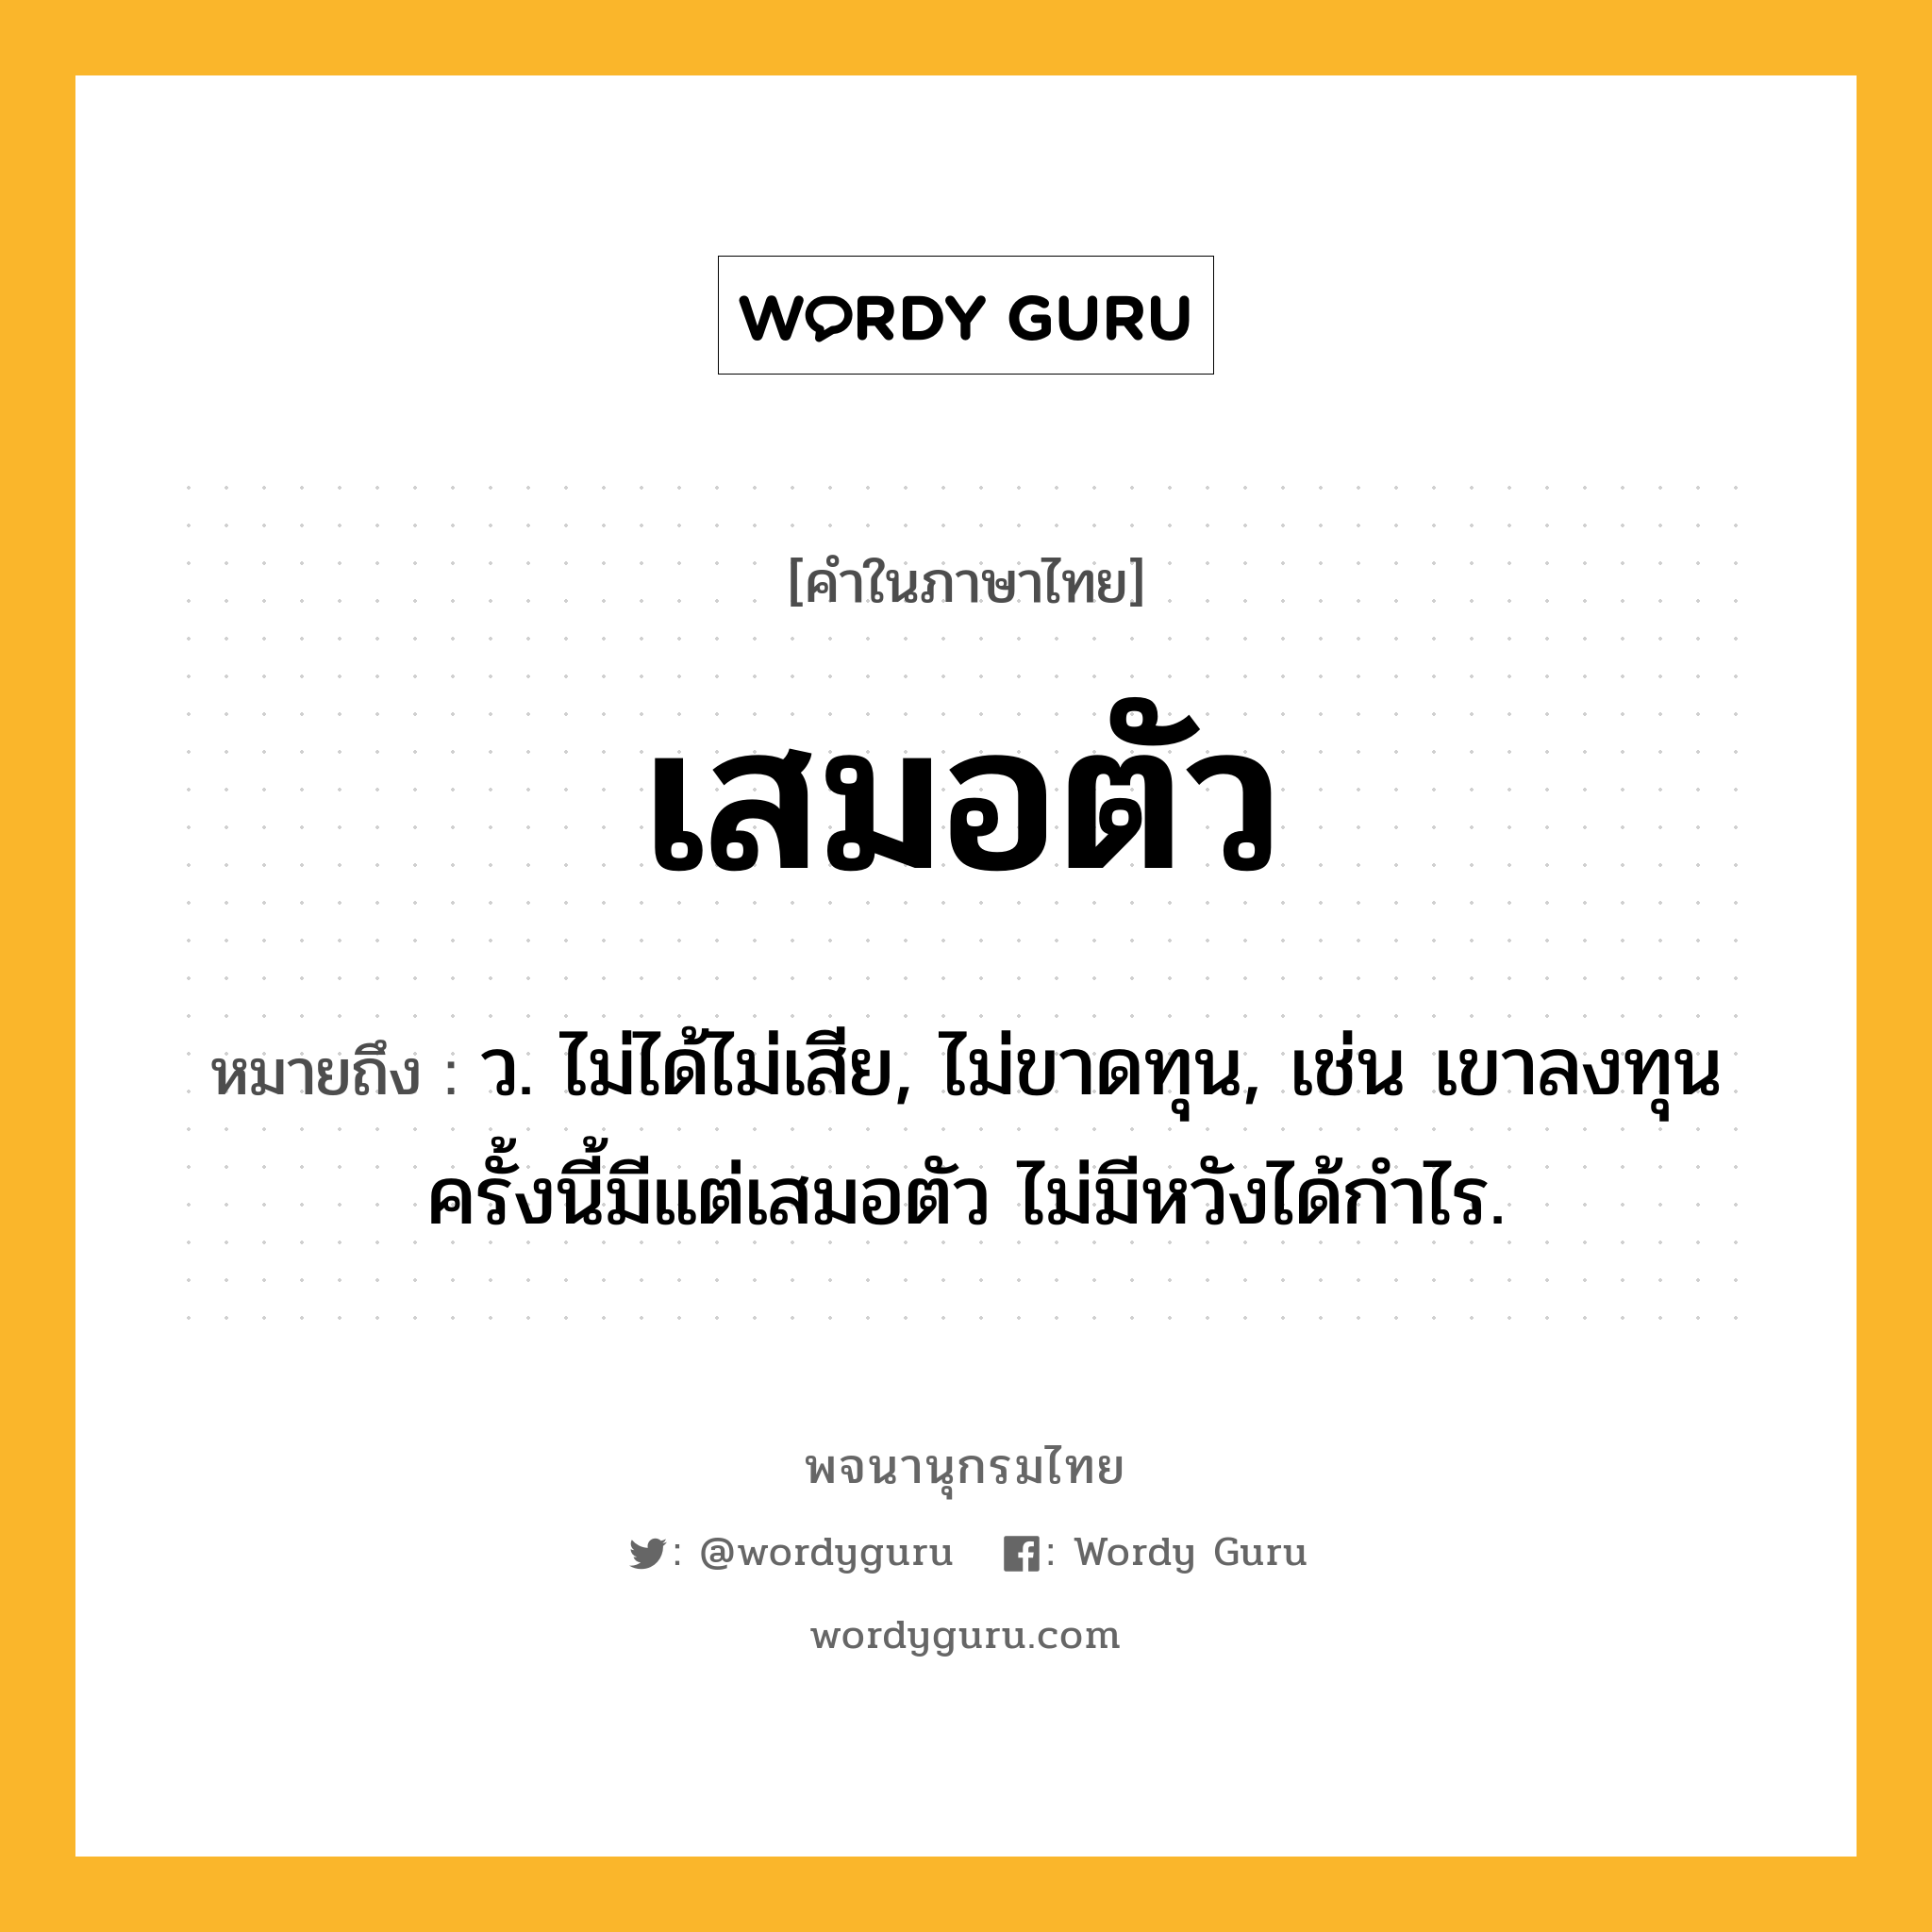 เสมอตัว ความหมาย หมายถึงอะไร?, คำในภาษาไทย เสมอตัว หมายถึง ว. ไม่ได้ไม่เสีย, ไม่ขาดทุน, เช่น เขาลงทุนครั้งนี้มีแต่เสมอตัว ไม่มีหวังได้กำไร.